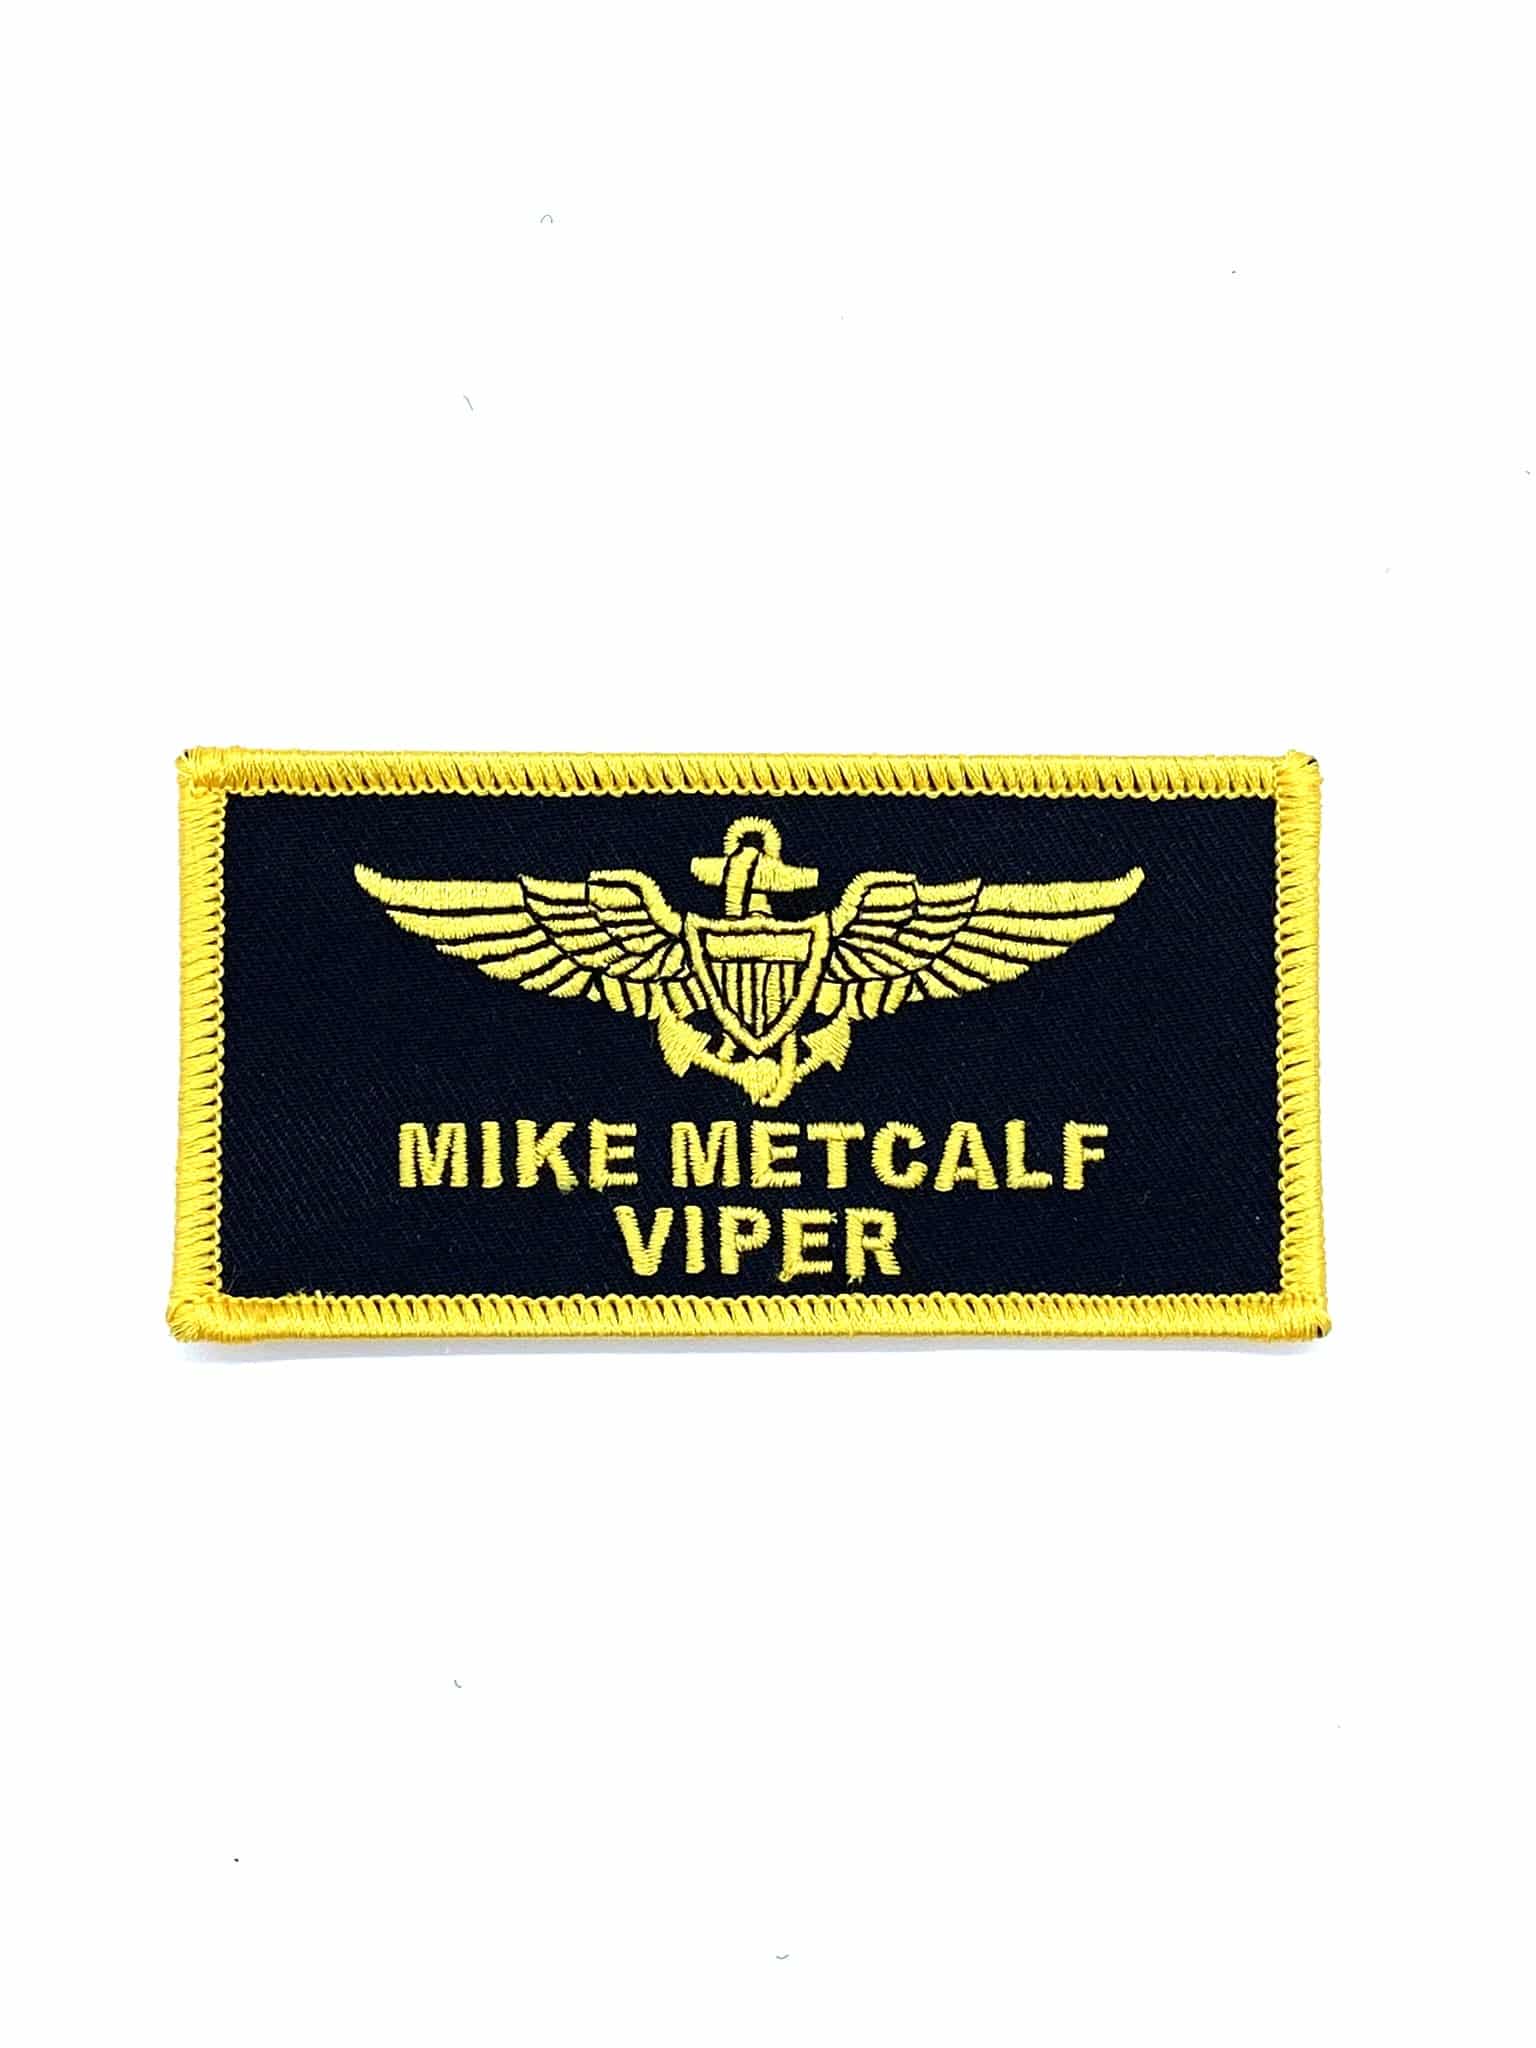 LT Mike Metcalf 'VIPER' TOPGUN Name Tag Patch- Hook and Loop